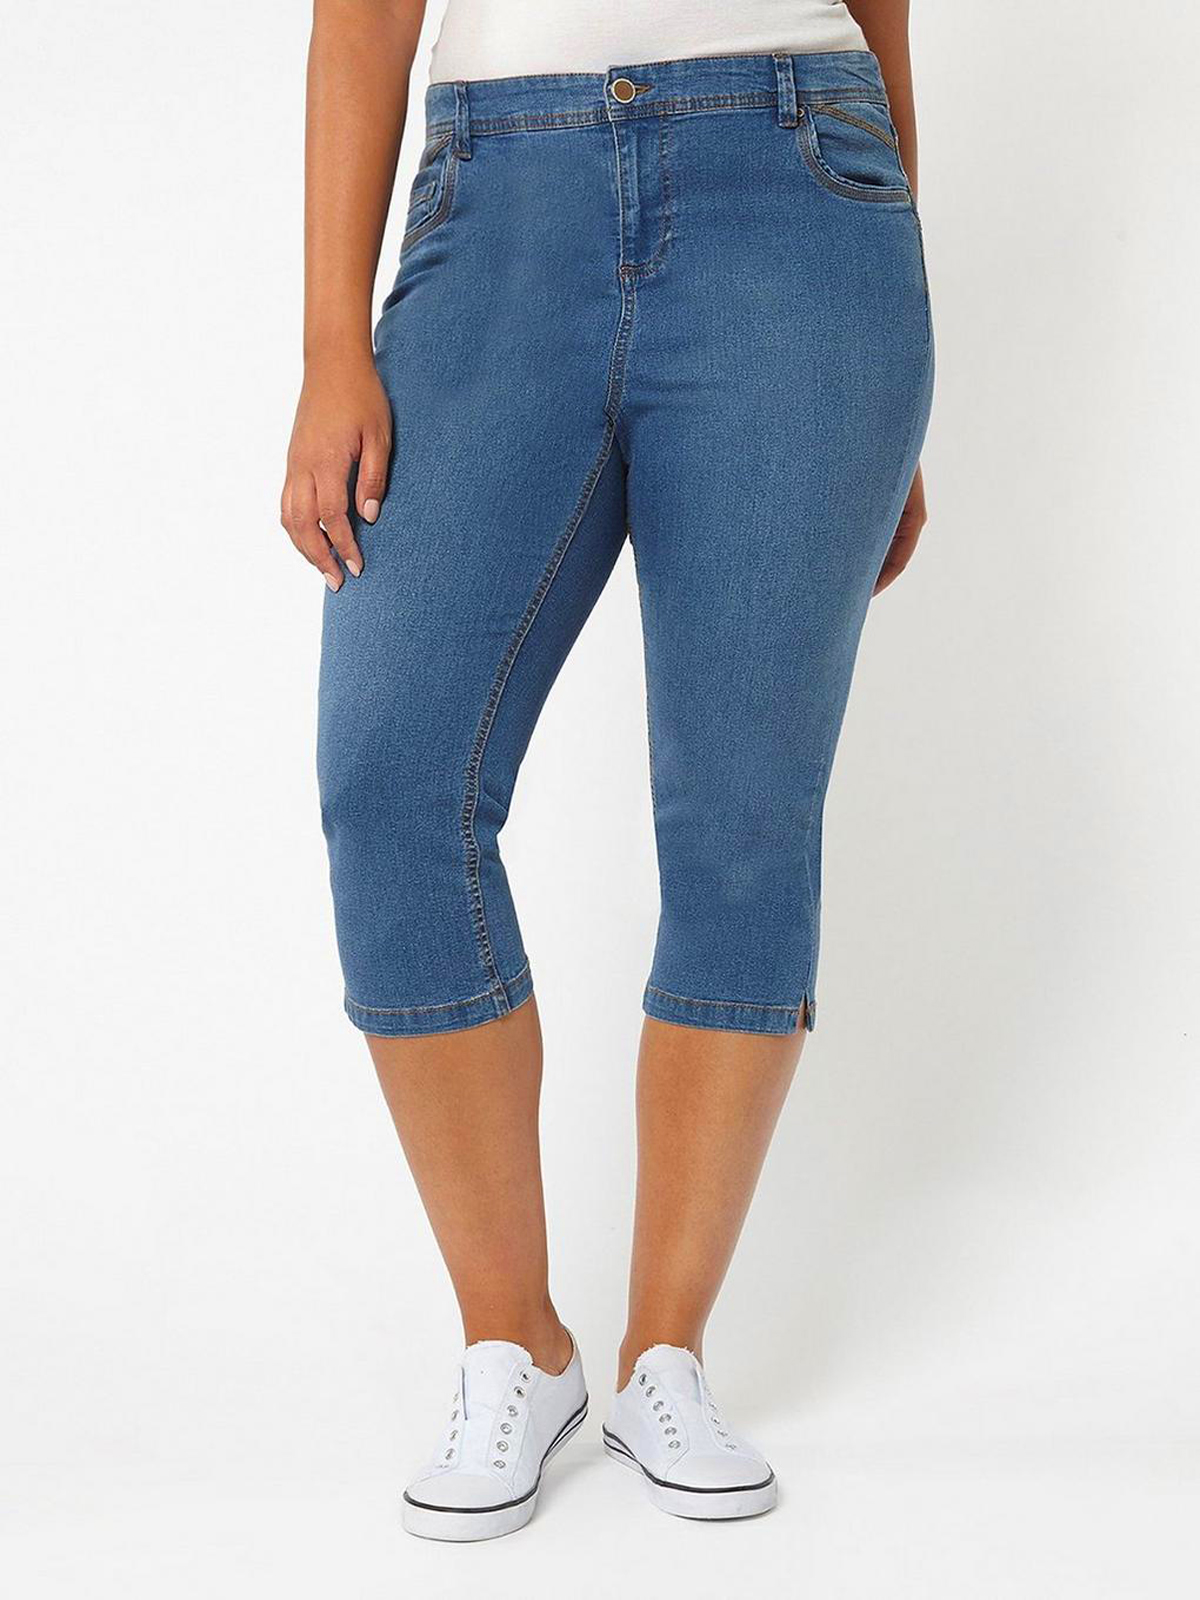 DENIM Cotton Rich 5Pocket Contrast Stitch Cropped Denim Jeans Plus Size